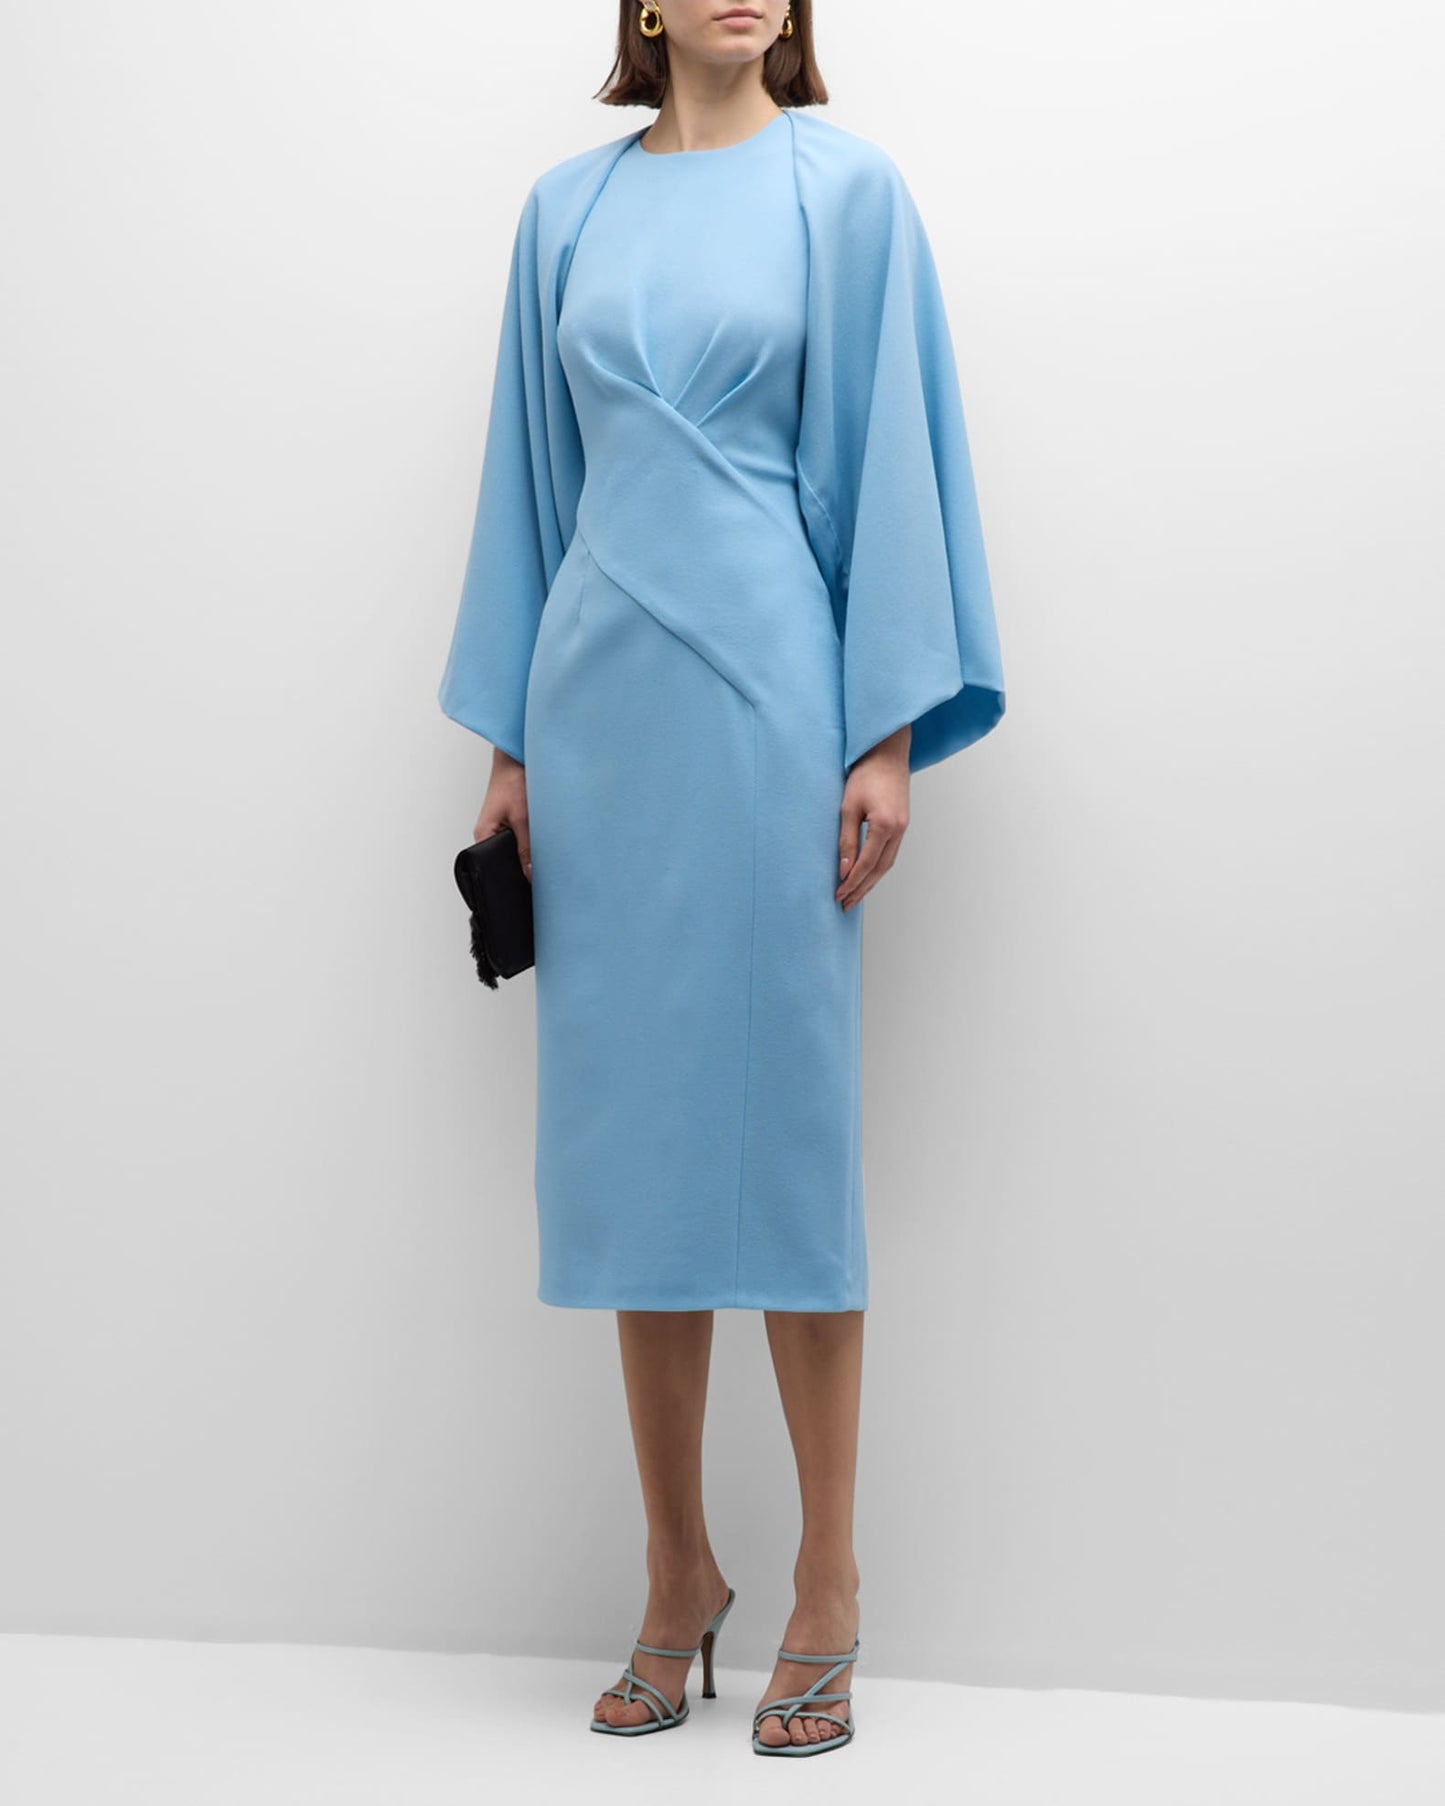 E.Stott Crossover Cape-Sleeve Midi Dress